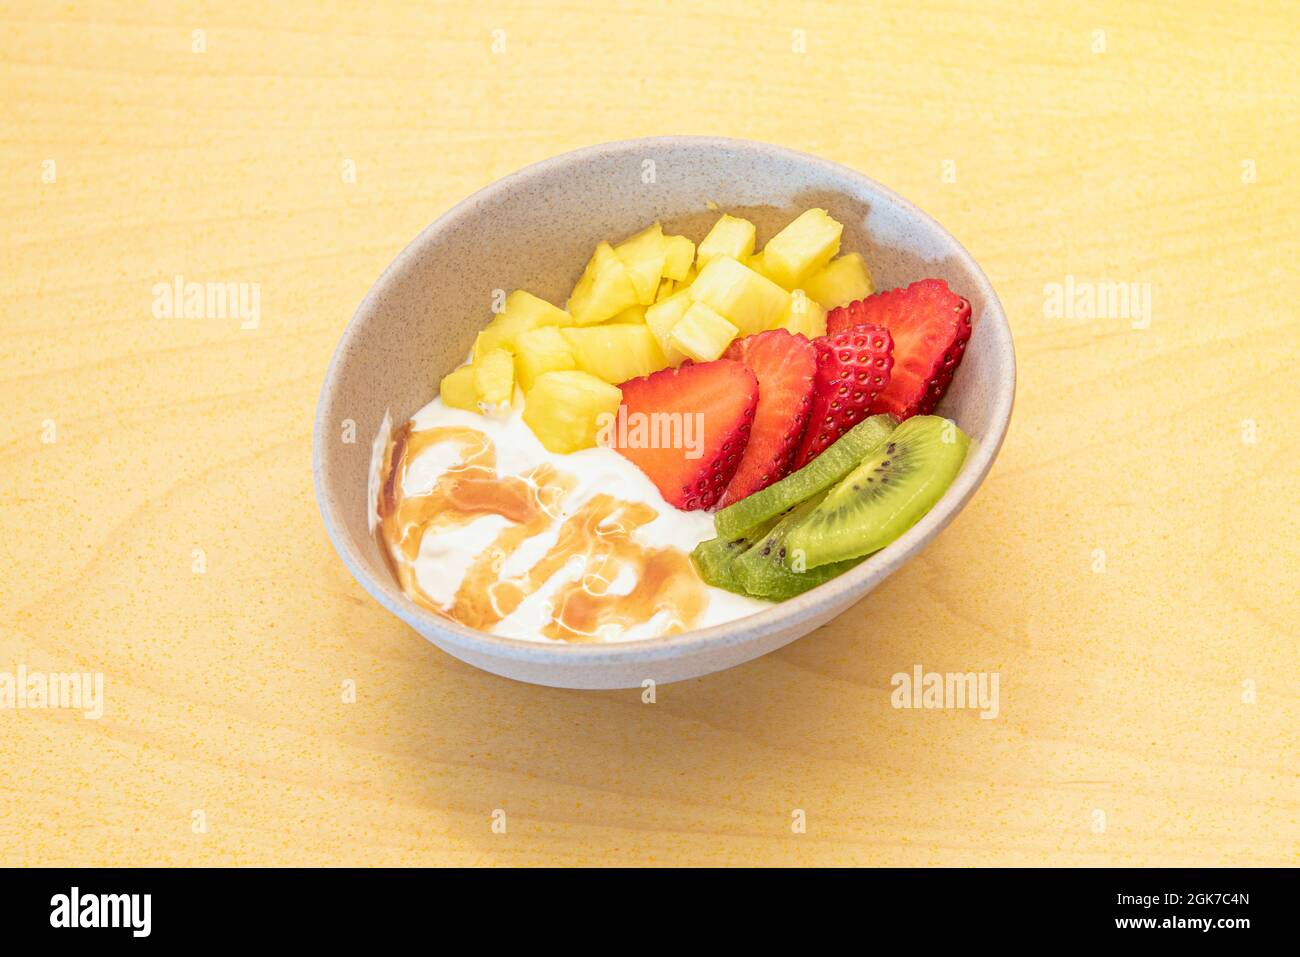 Ciotola di frutta fresca con yogurt e sciroppo. Ananas, kiwi e fragole tritate su tavola gialla Foto Stock